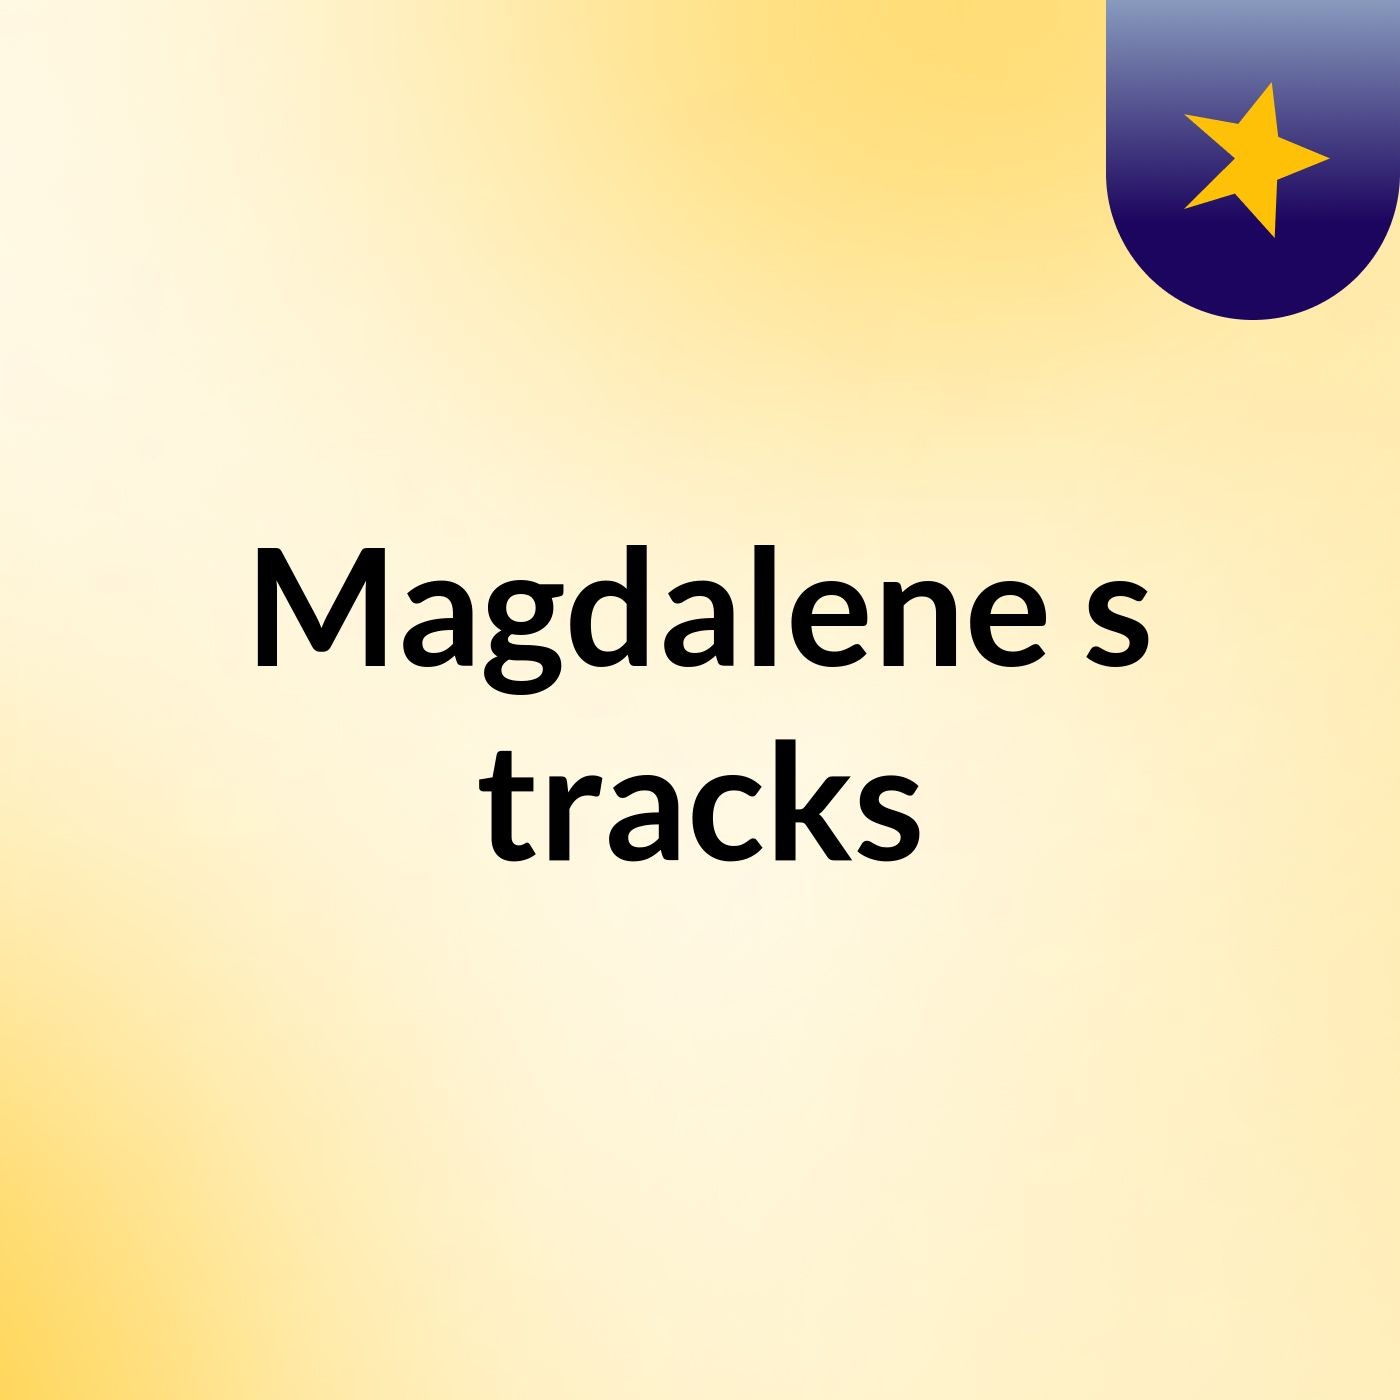 Magdalene's tracks